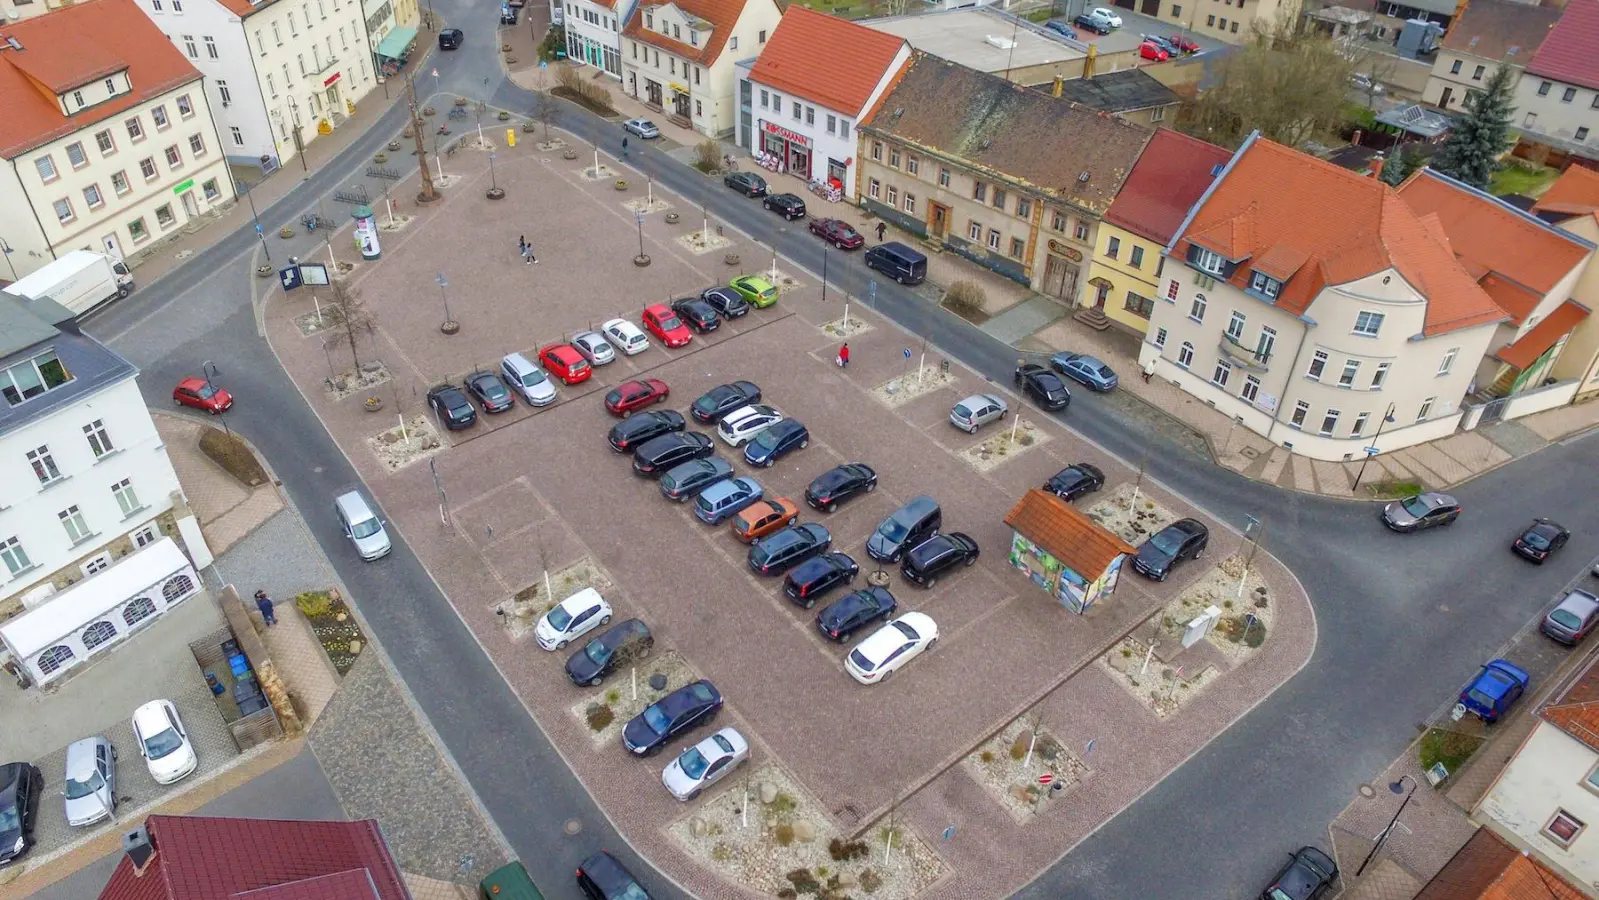 Freies WLAN: Tauchas Marktplatz wird Hotspot (Foto: taucha-kompakt.de)